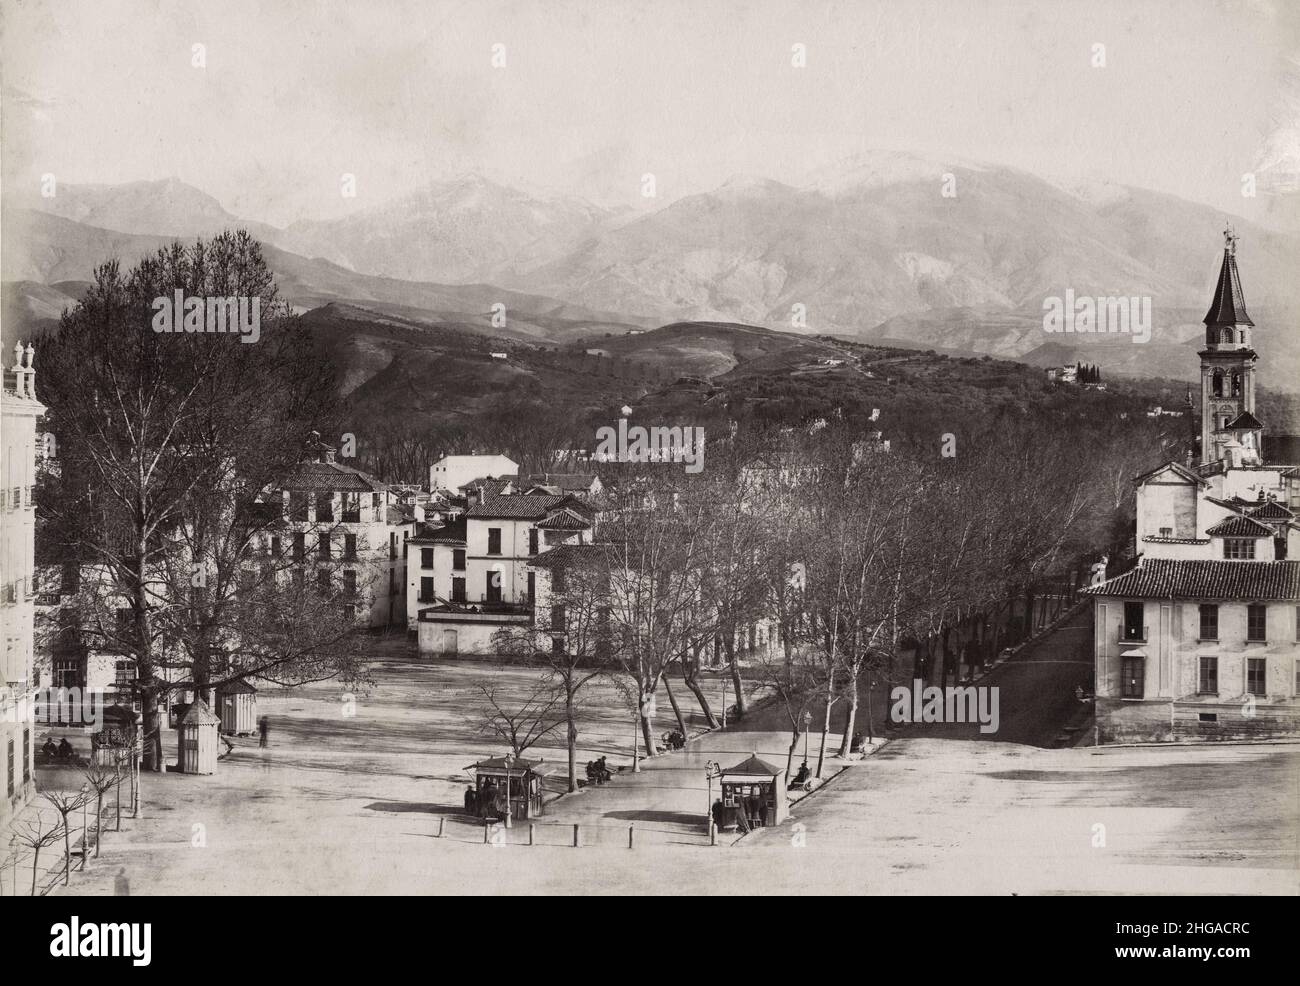 Photographie vintage du 19th siècle - Granda Espagne, Sierra Nevada. Banque D'Images